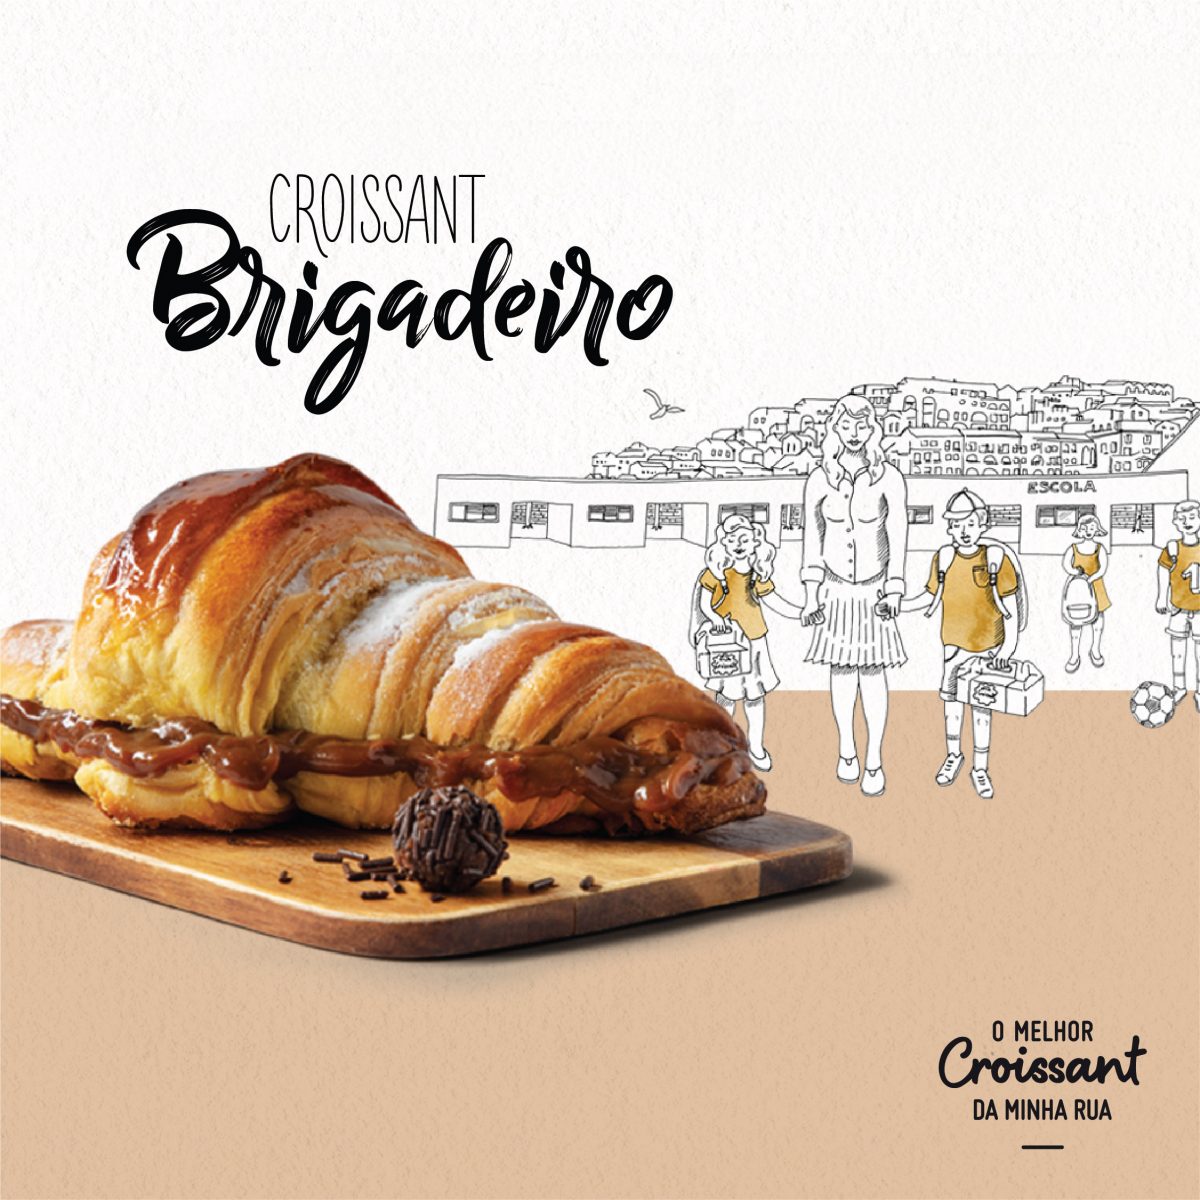 Croissant Brigadeiro